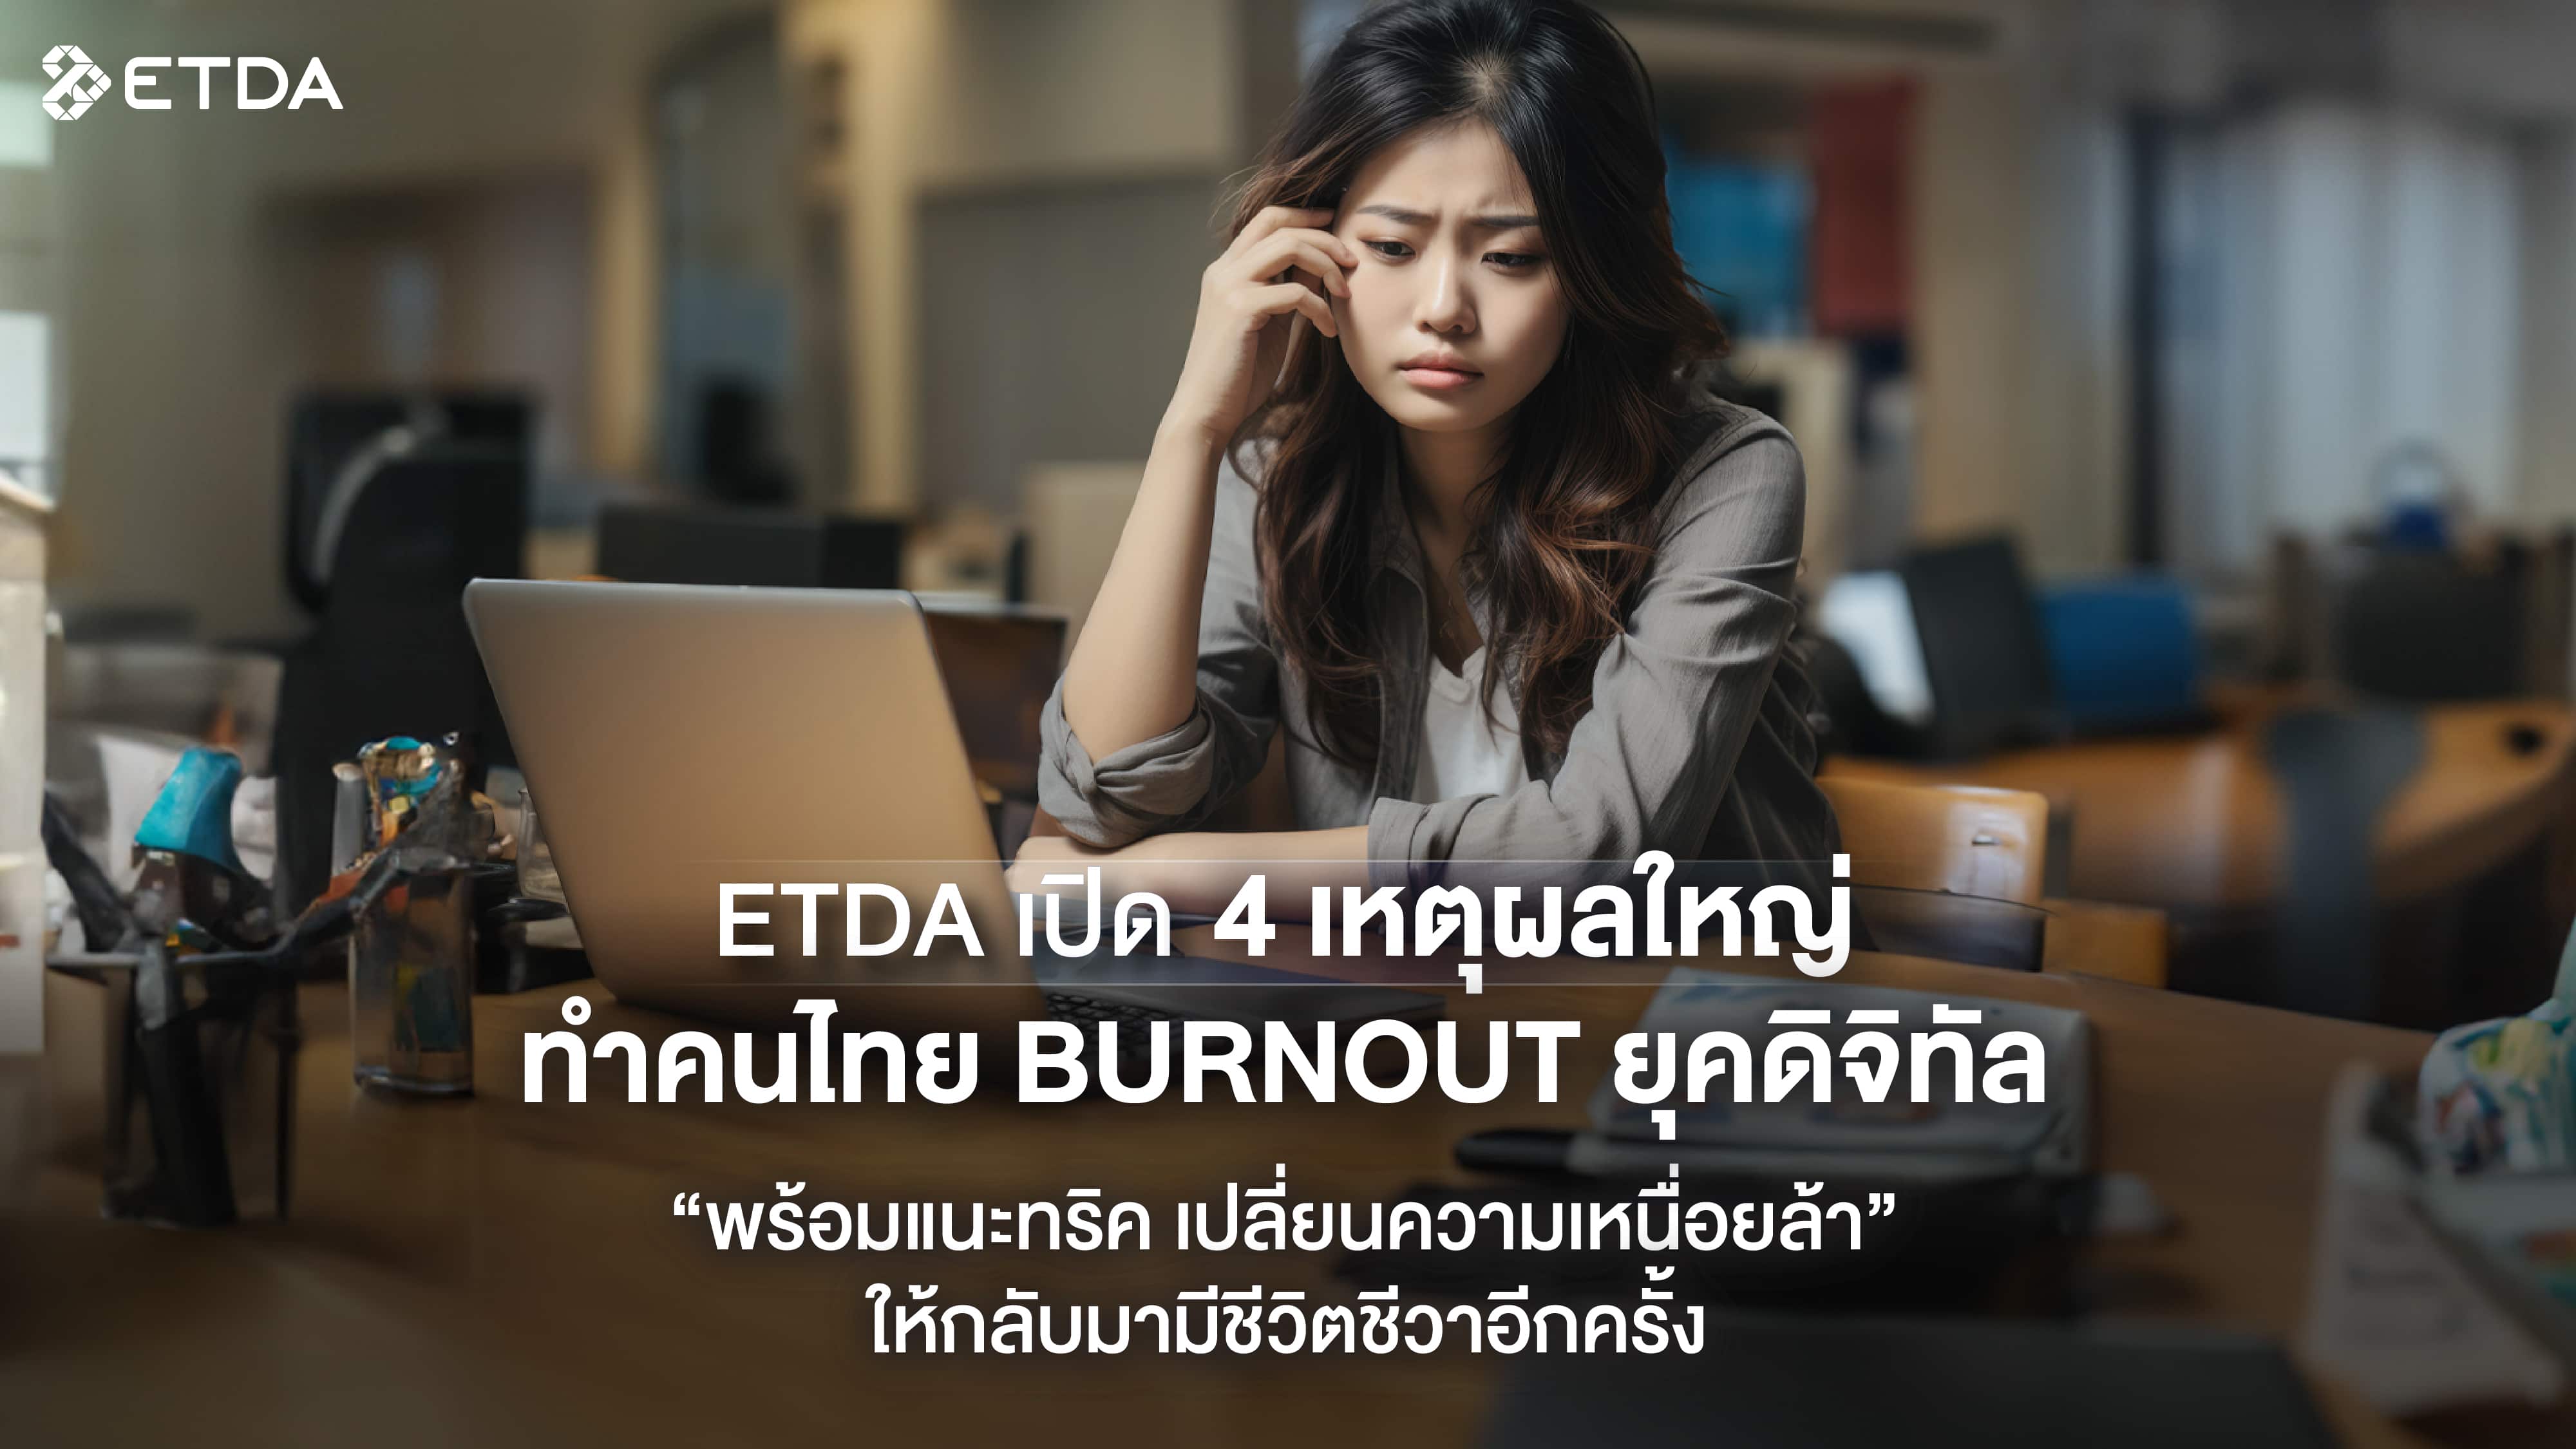 ETDA-ภาพประกอบบทความประชาสมพนธ_ภาวะ-burnout-ในยคดจทล-2.jpg